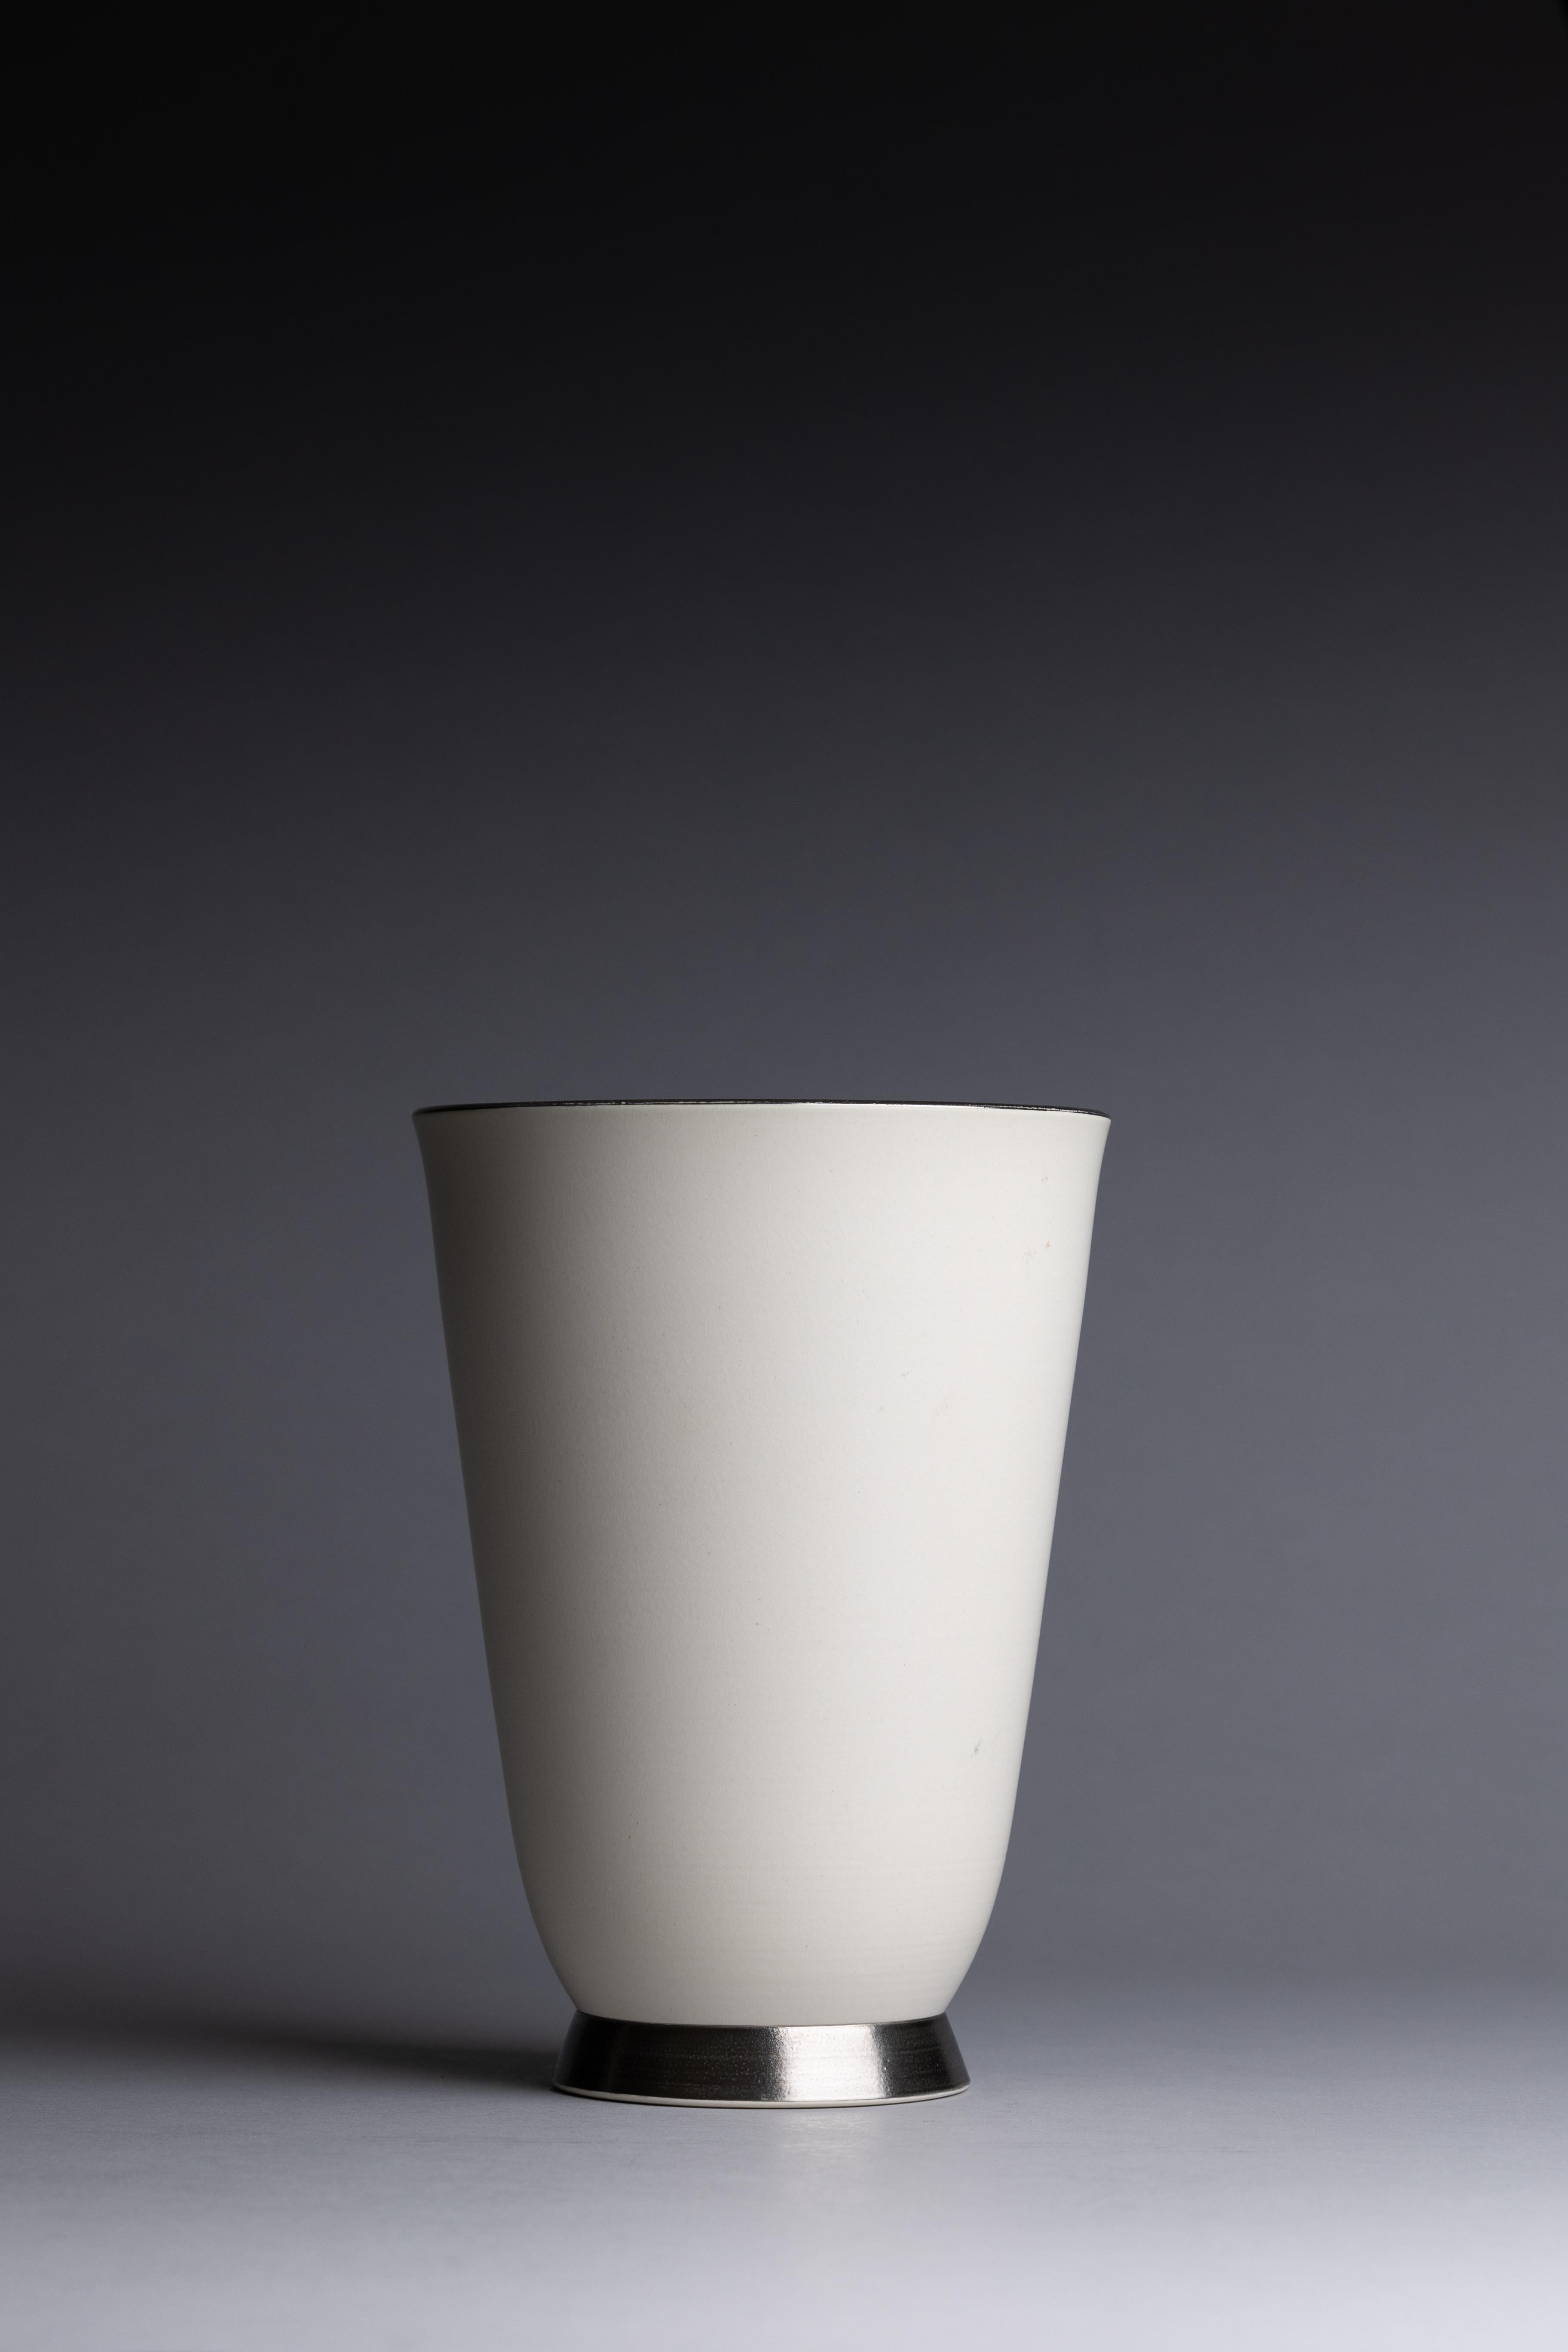 Vase des années 1930 de Keith Murray pour Wedgwood, avec un extérieur émaillé de pierre de lune et un intérieur vert mat, accentué par des détails en platine autour du bord et du pied.

Dimensions : 9 1/4 in. H x 6 1/2 in. Dm
État :